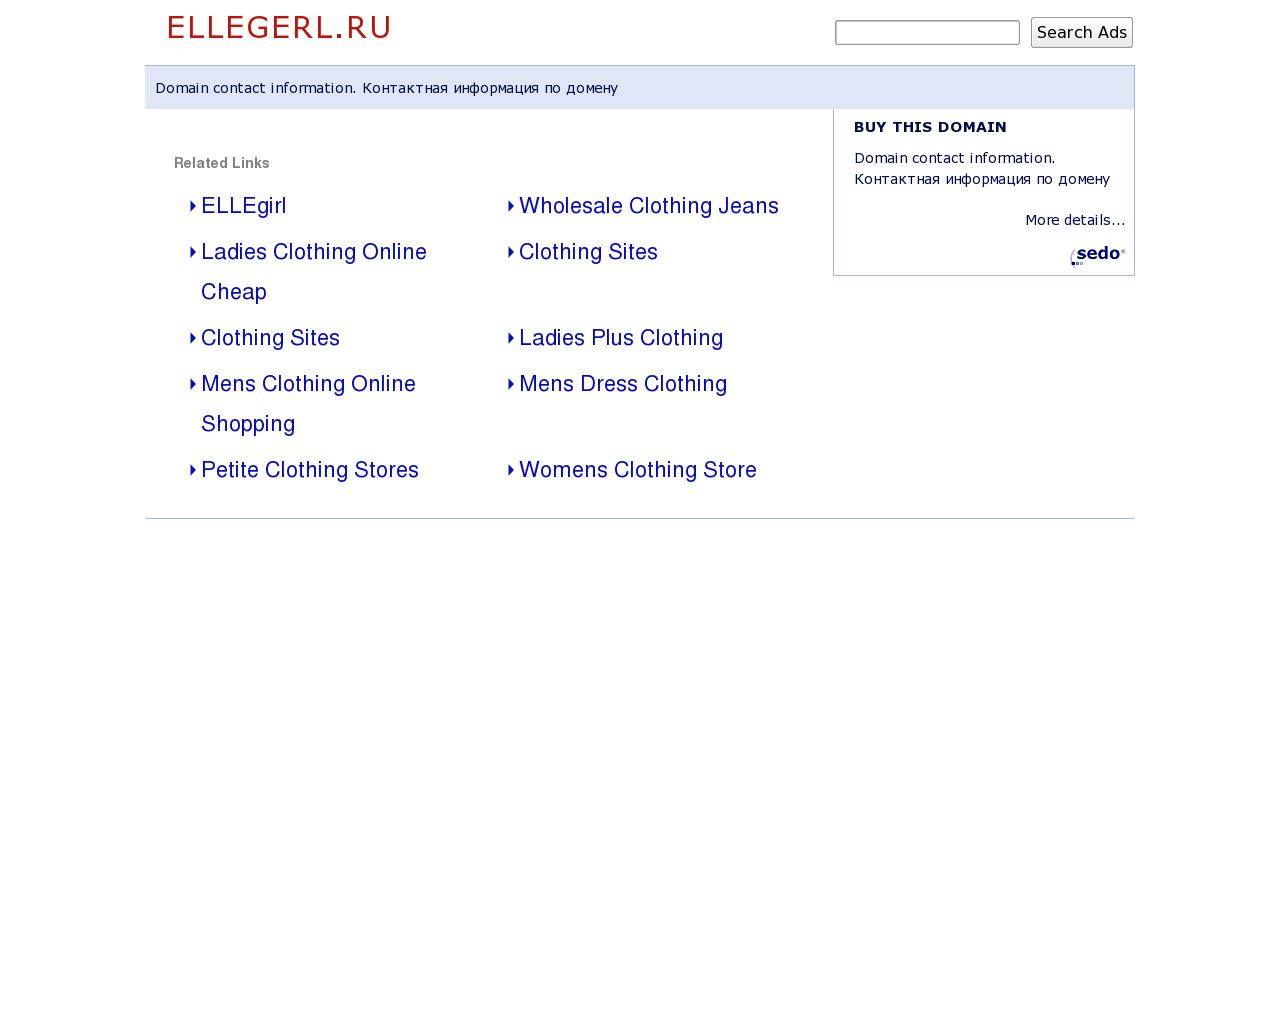 Изображение сайта ellegerl.ru в разрешении 1280x1024